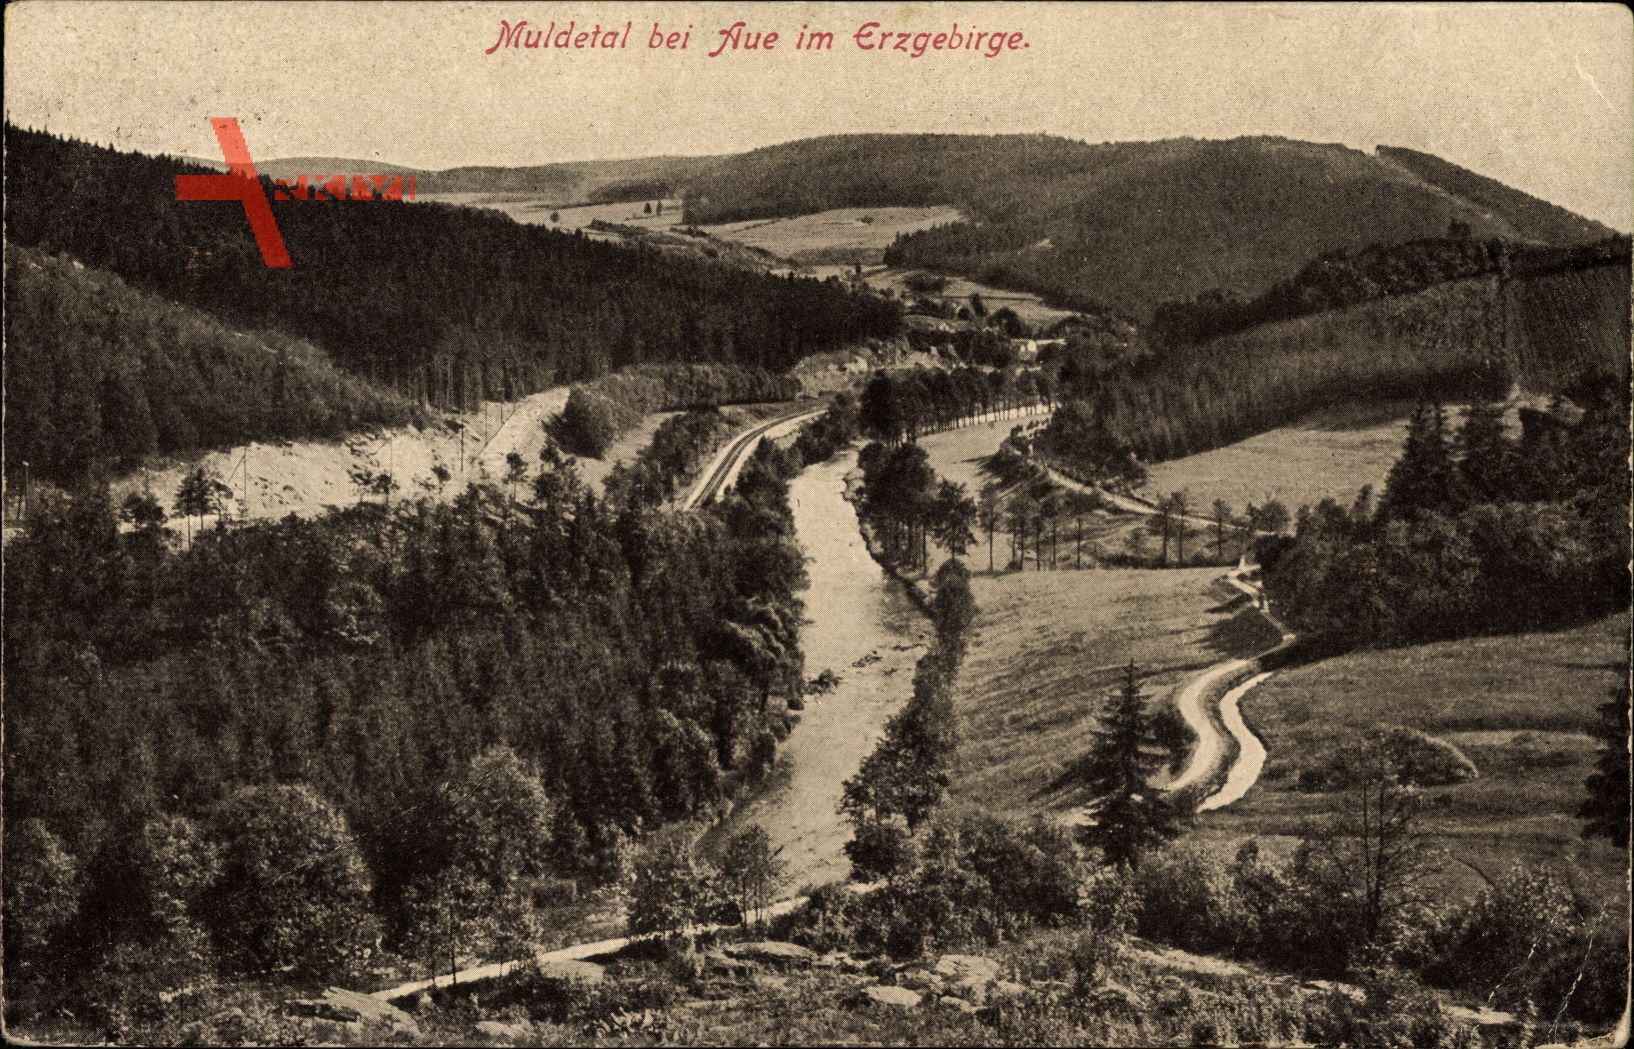 Aue im Erzgebirge, Partie im Muldetal, Flusslauf und Waldpartie